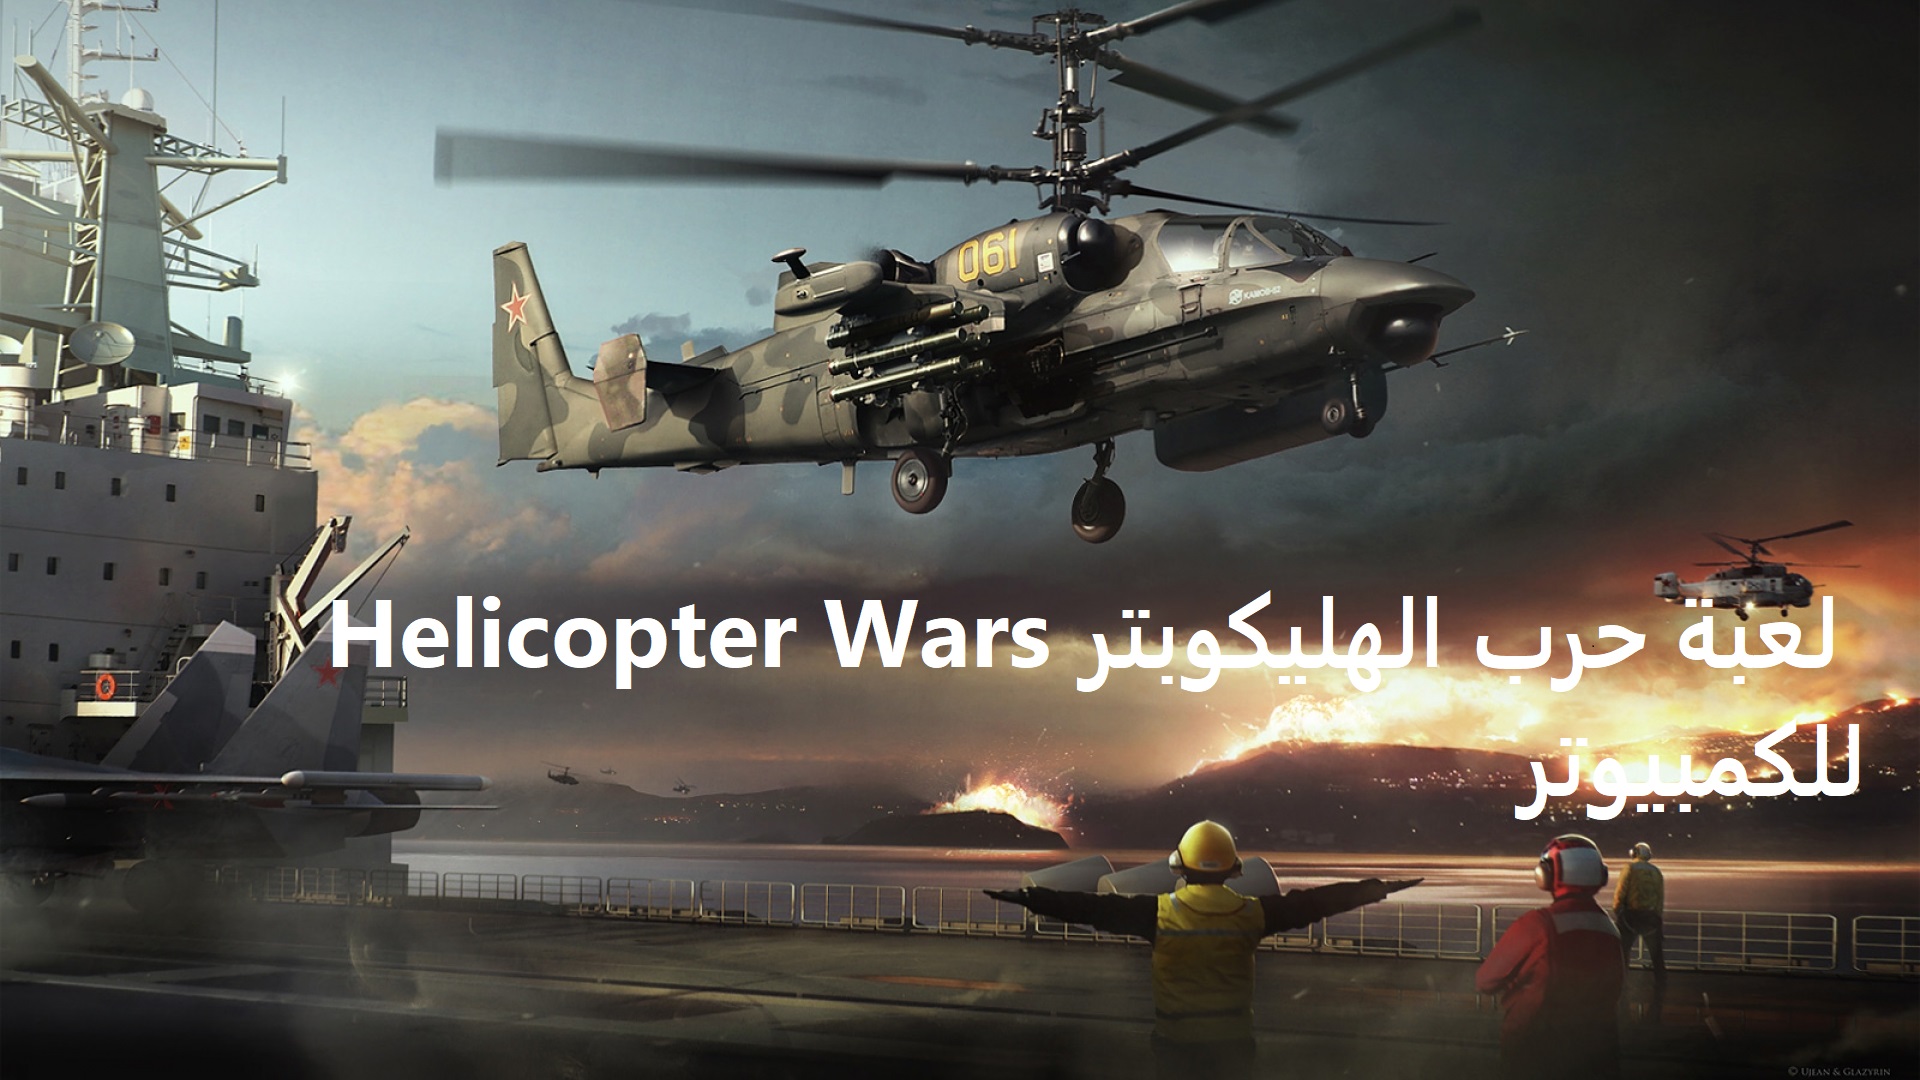 تحميل لعبة حرب الهليكوبتر Helicopter Wars للكمبيوتر 2022 برابط مباشر